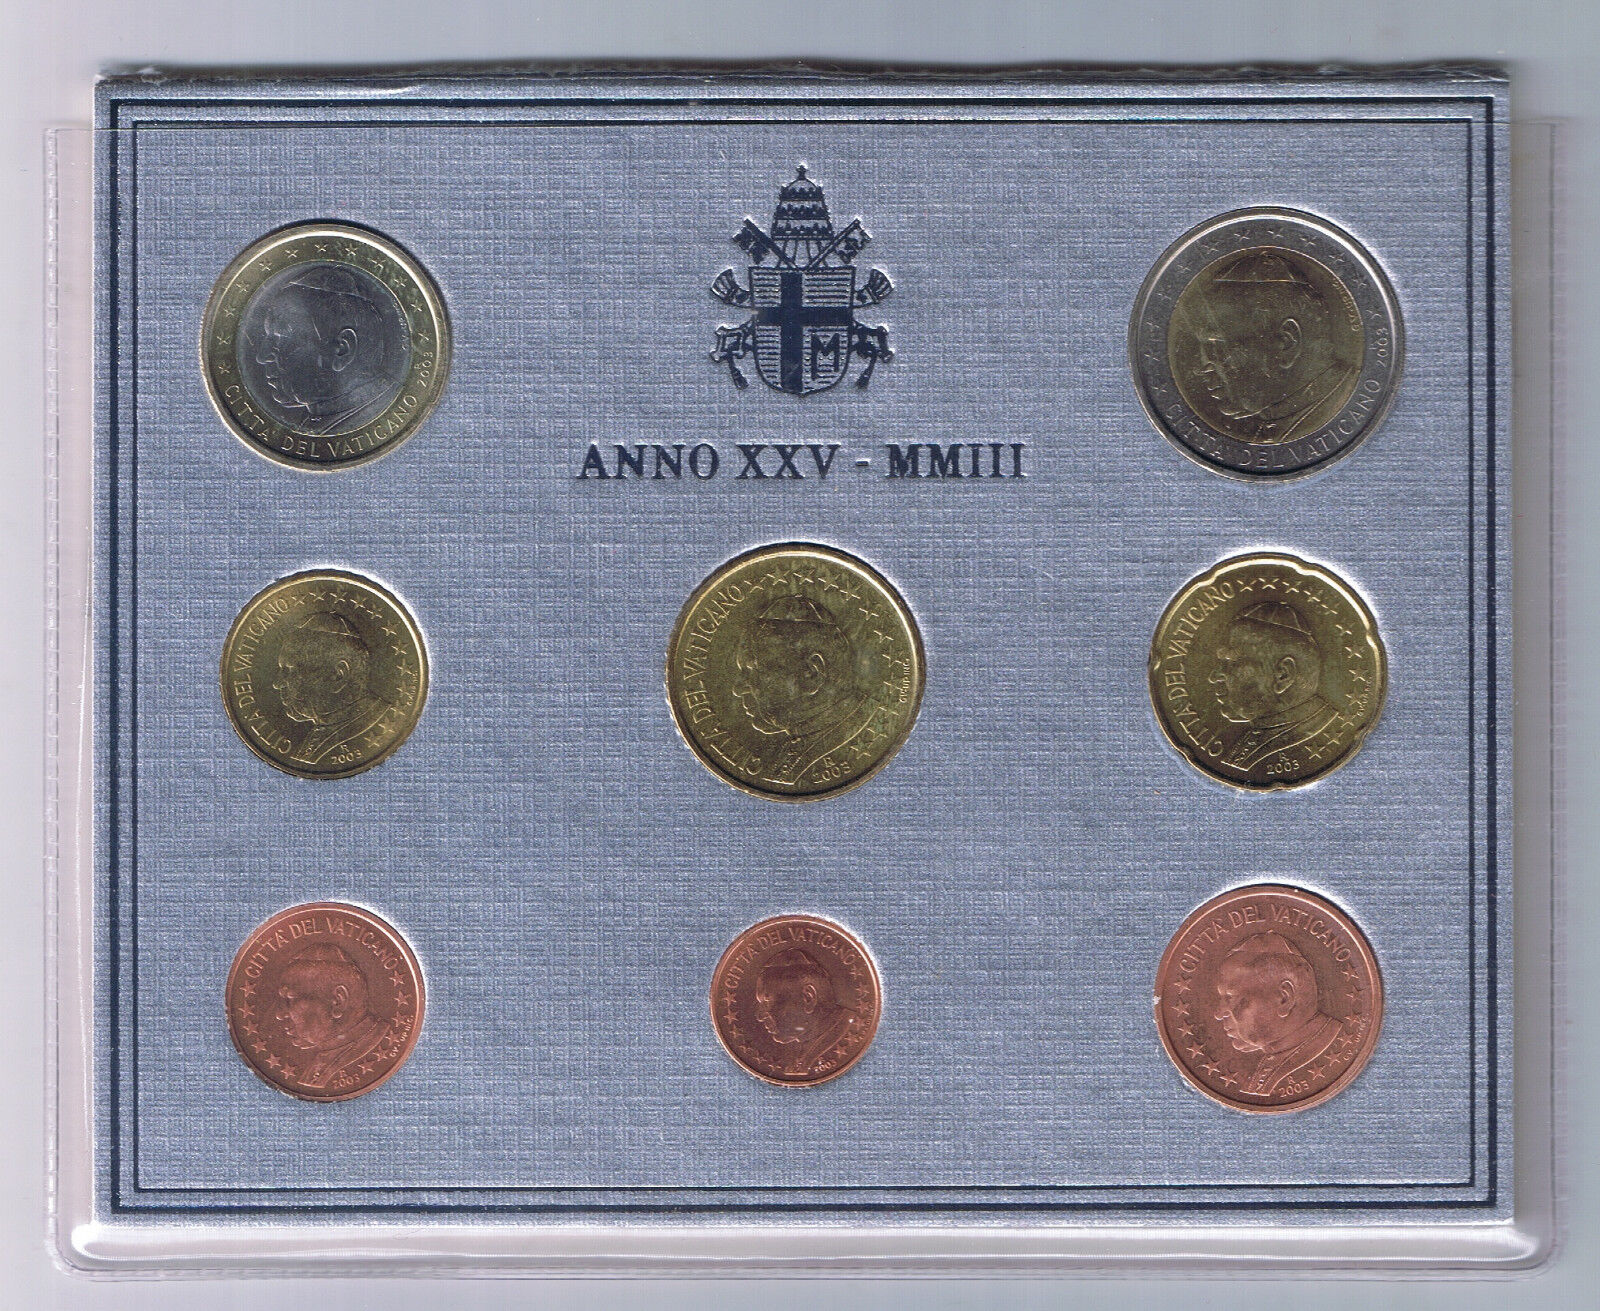 2003 Vatican City Mint Set 8 Coins 1 cent to 2 euro Stato Citta del Vaticano UNC